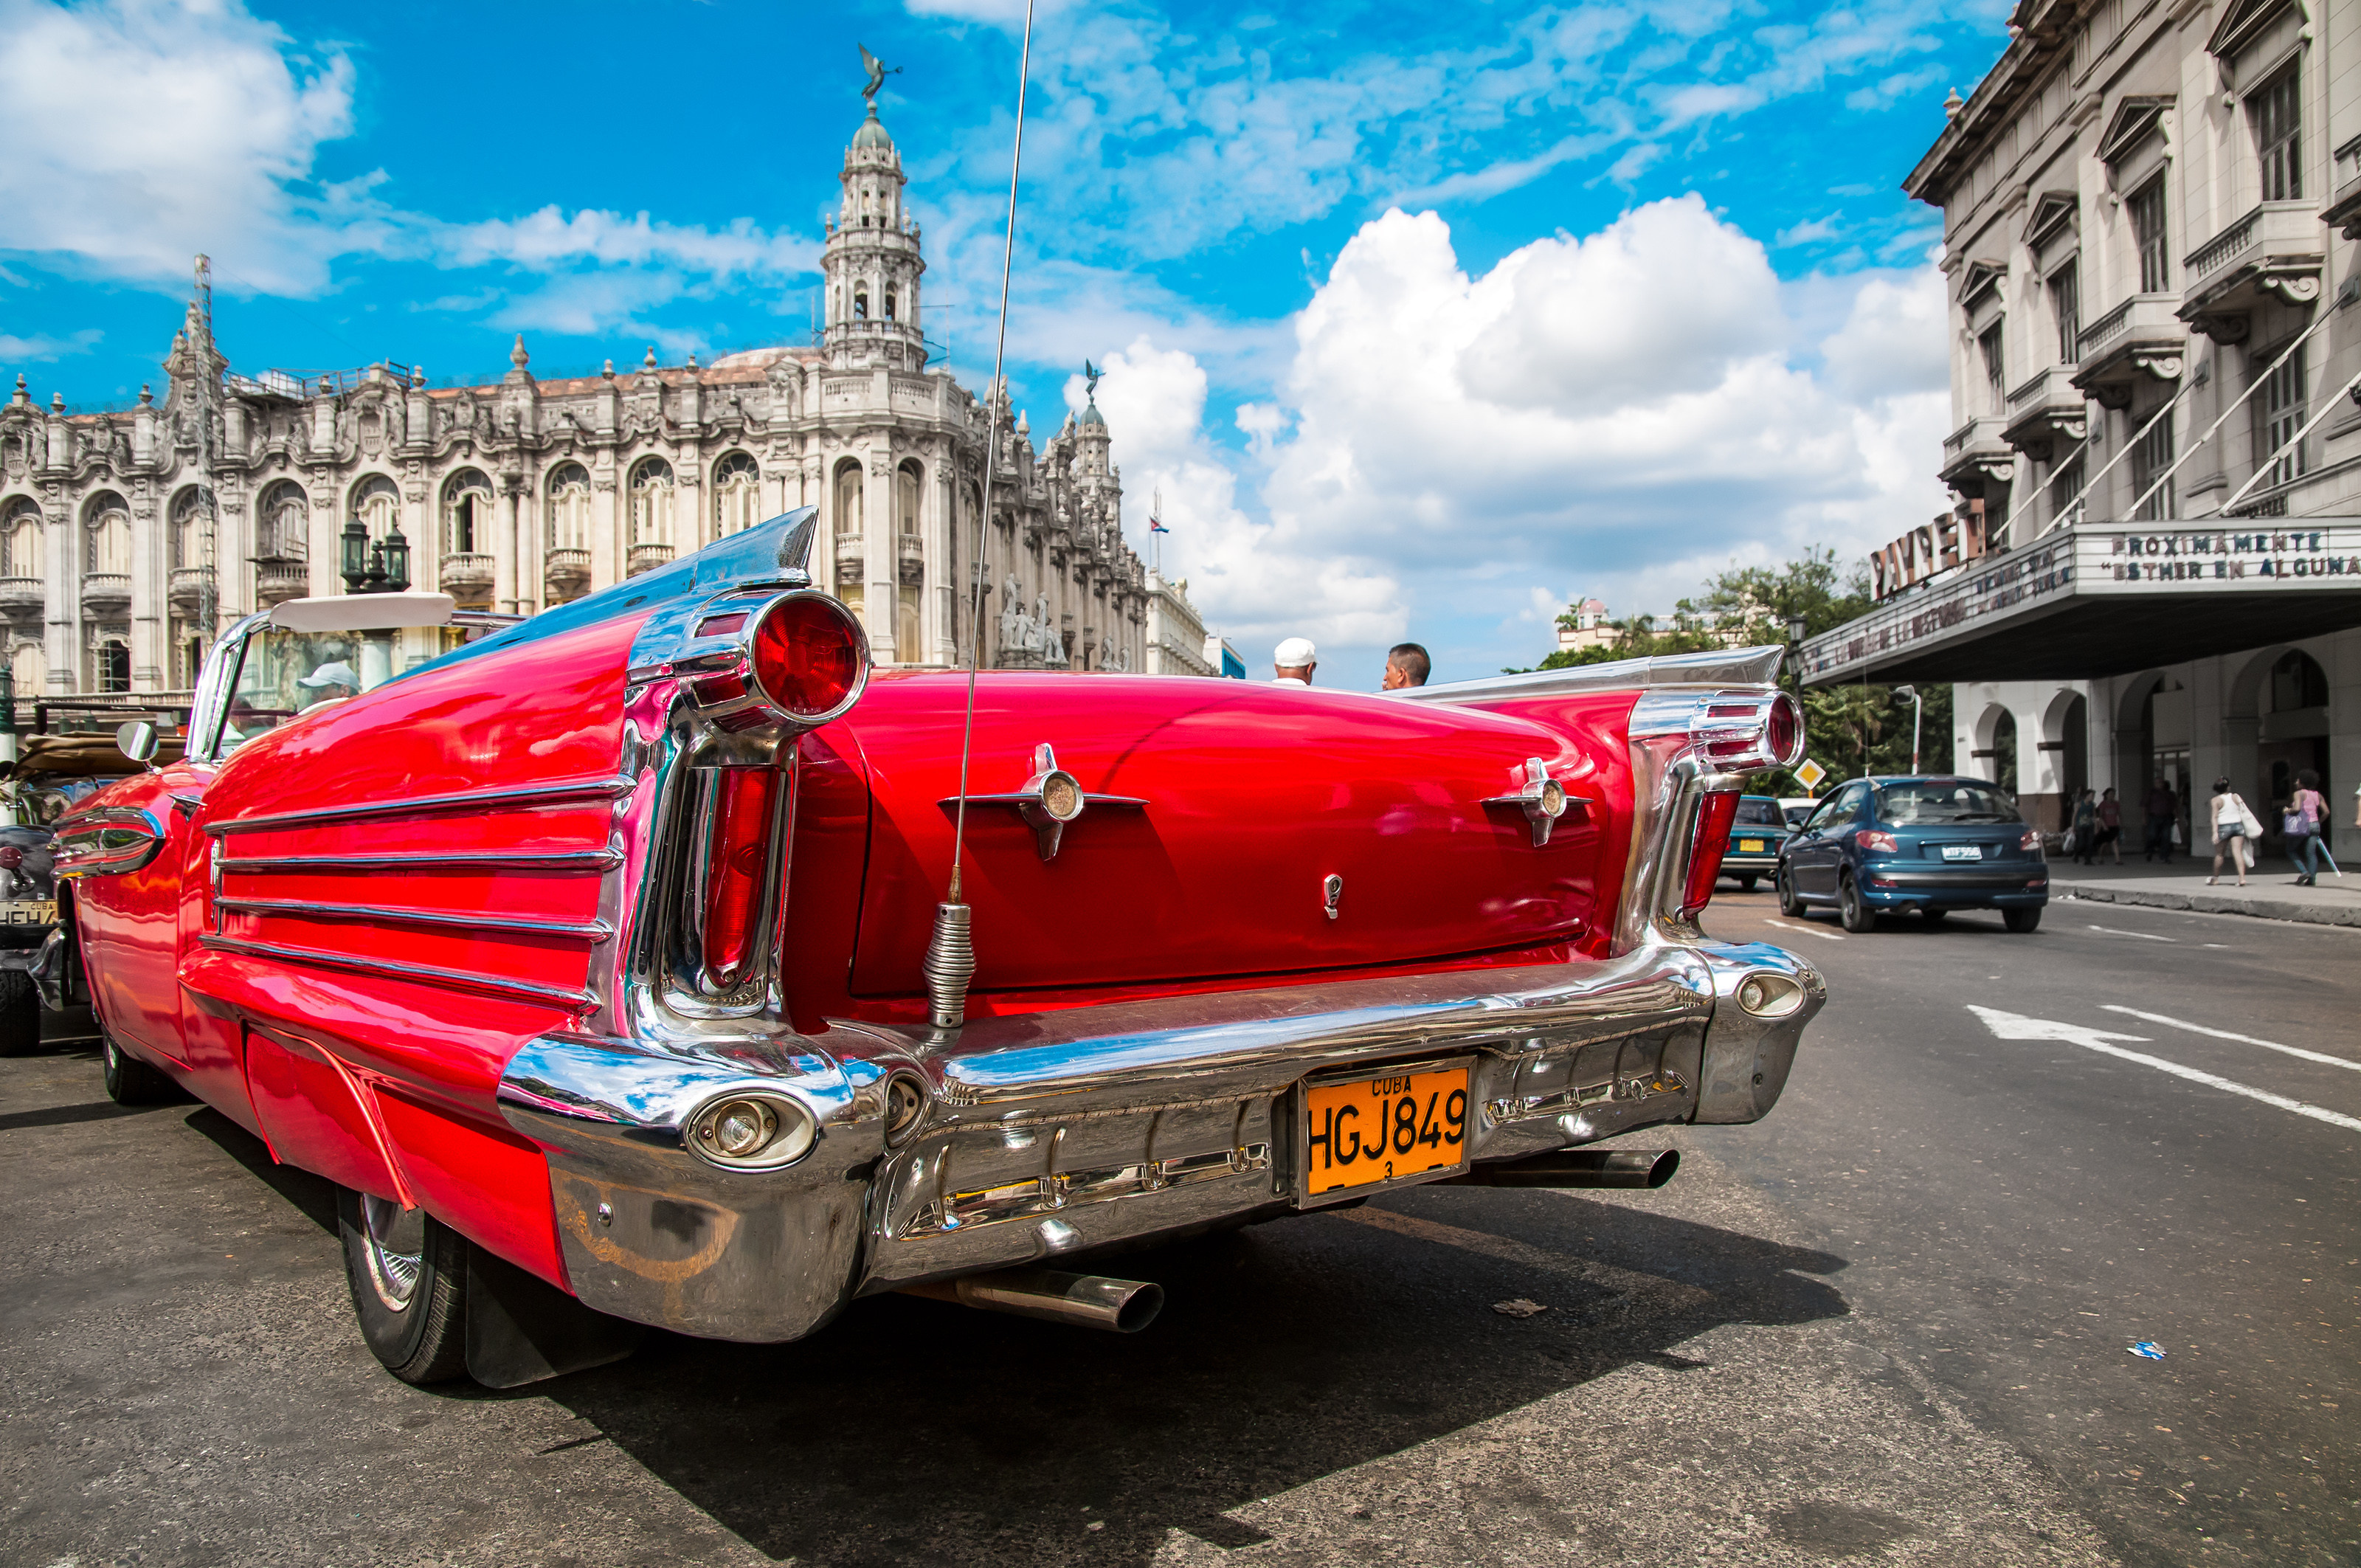 Cuba HD wallpaper, Stunning scenery, Cuban landmarks, High-resolution images, 3200x2130 HD Desktop